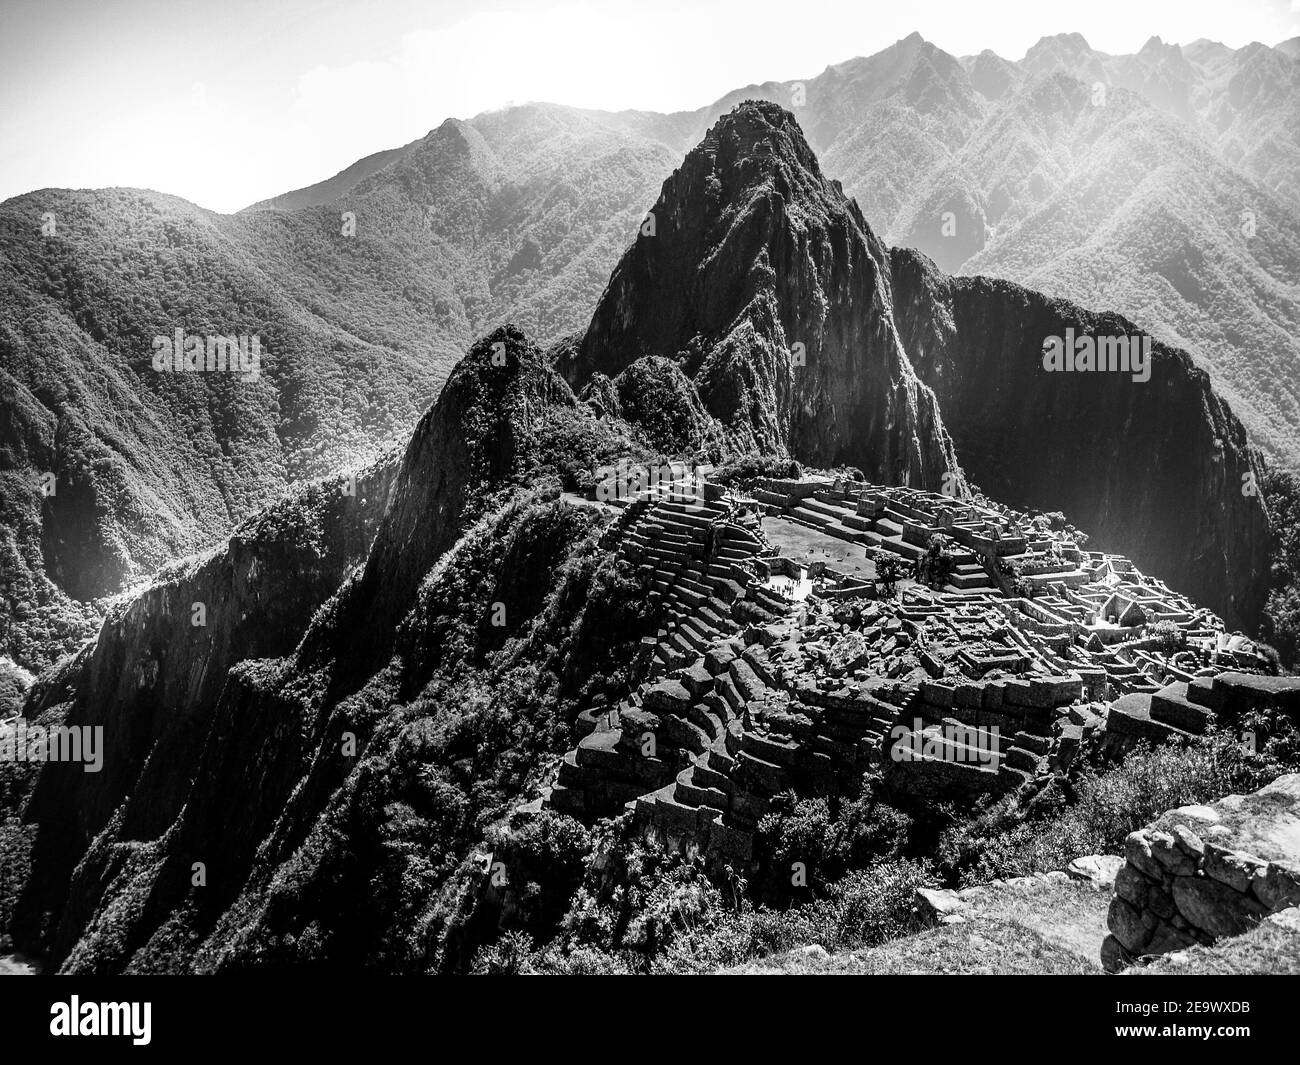 Machu Picchu, peruanische verlorene Stadt Incas auf Bergrücken über dem Heiligen Tal des Urubamba Flusses in Cusco Region, Peru. UNESCO-Welterbe und eines der Neuen Sieben Weltwunder Schwarz-Weiß-Bild. Schwarzweiß-Bild. Stockfoto